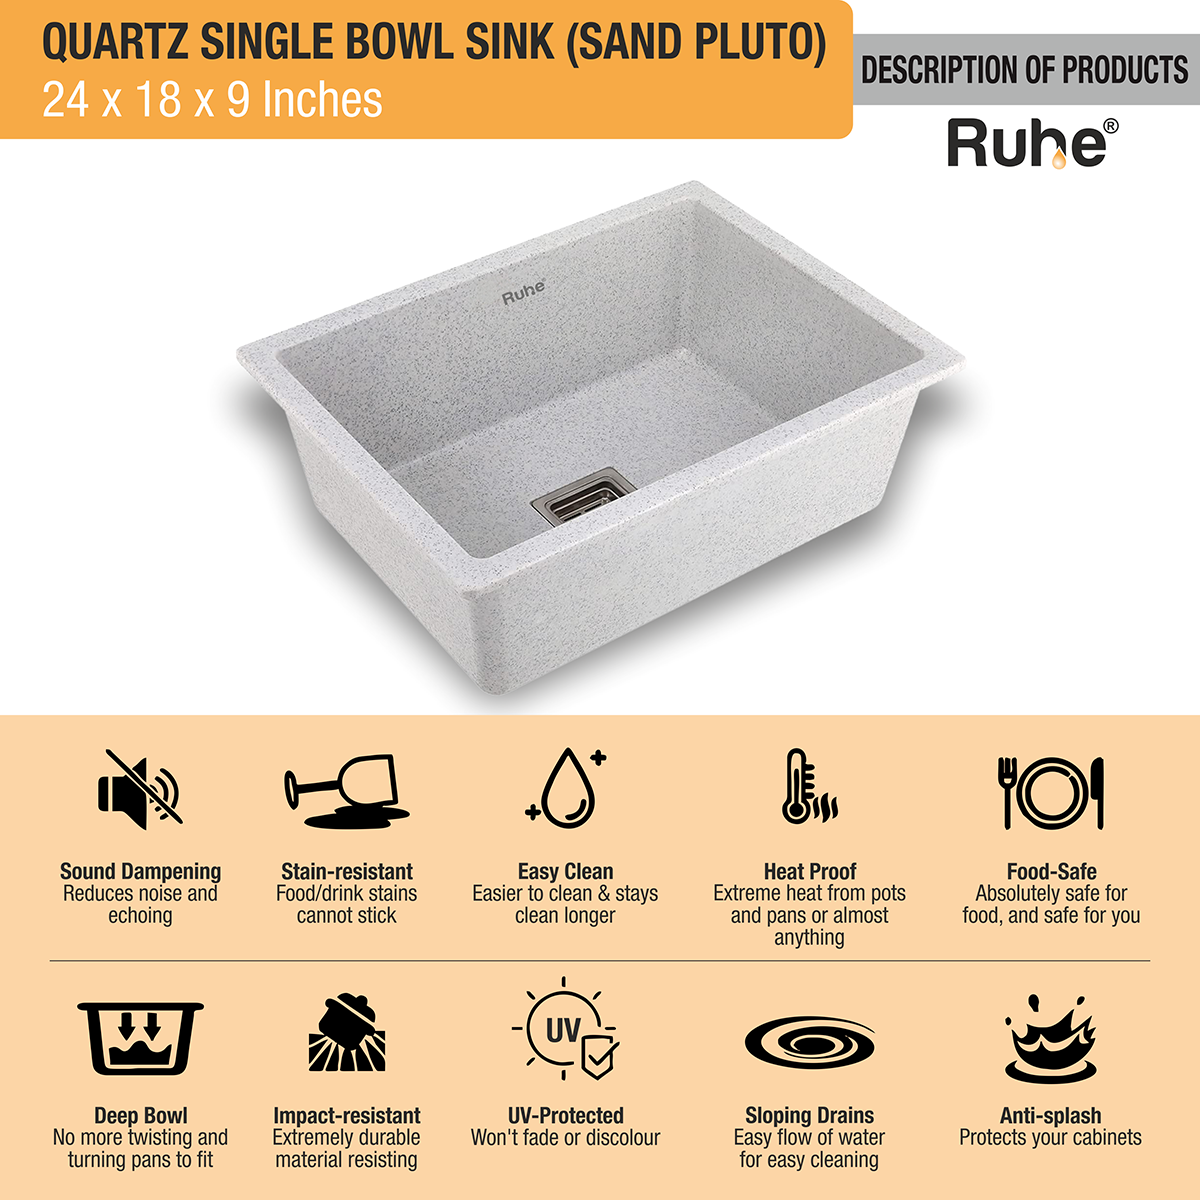 Quartz Sand Pluto Single Bowl Kitchen Sink (24 x 18 x 9 inches) description of products